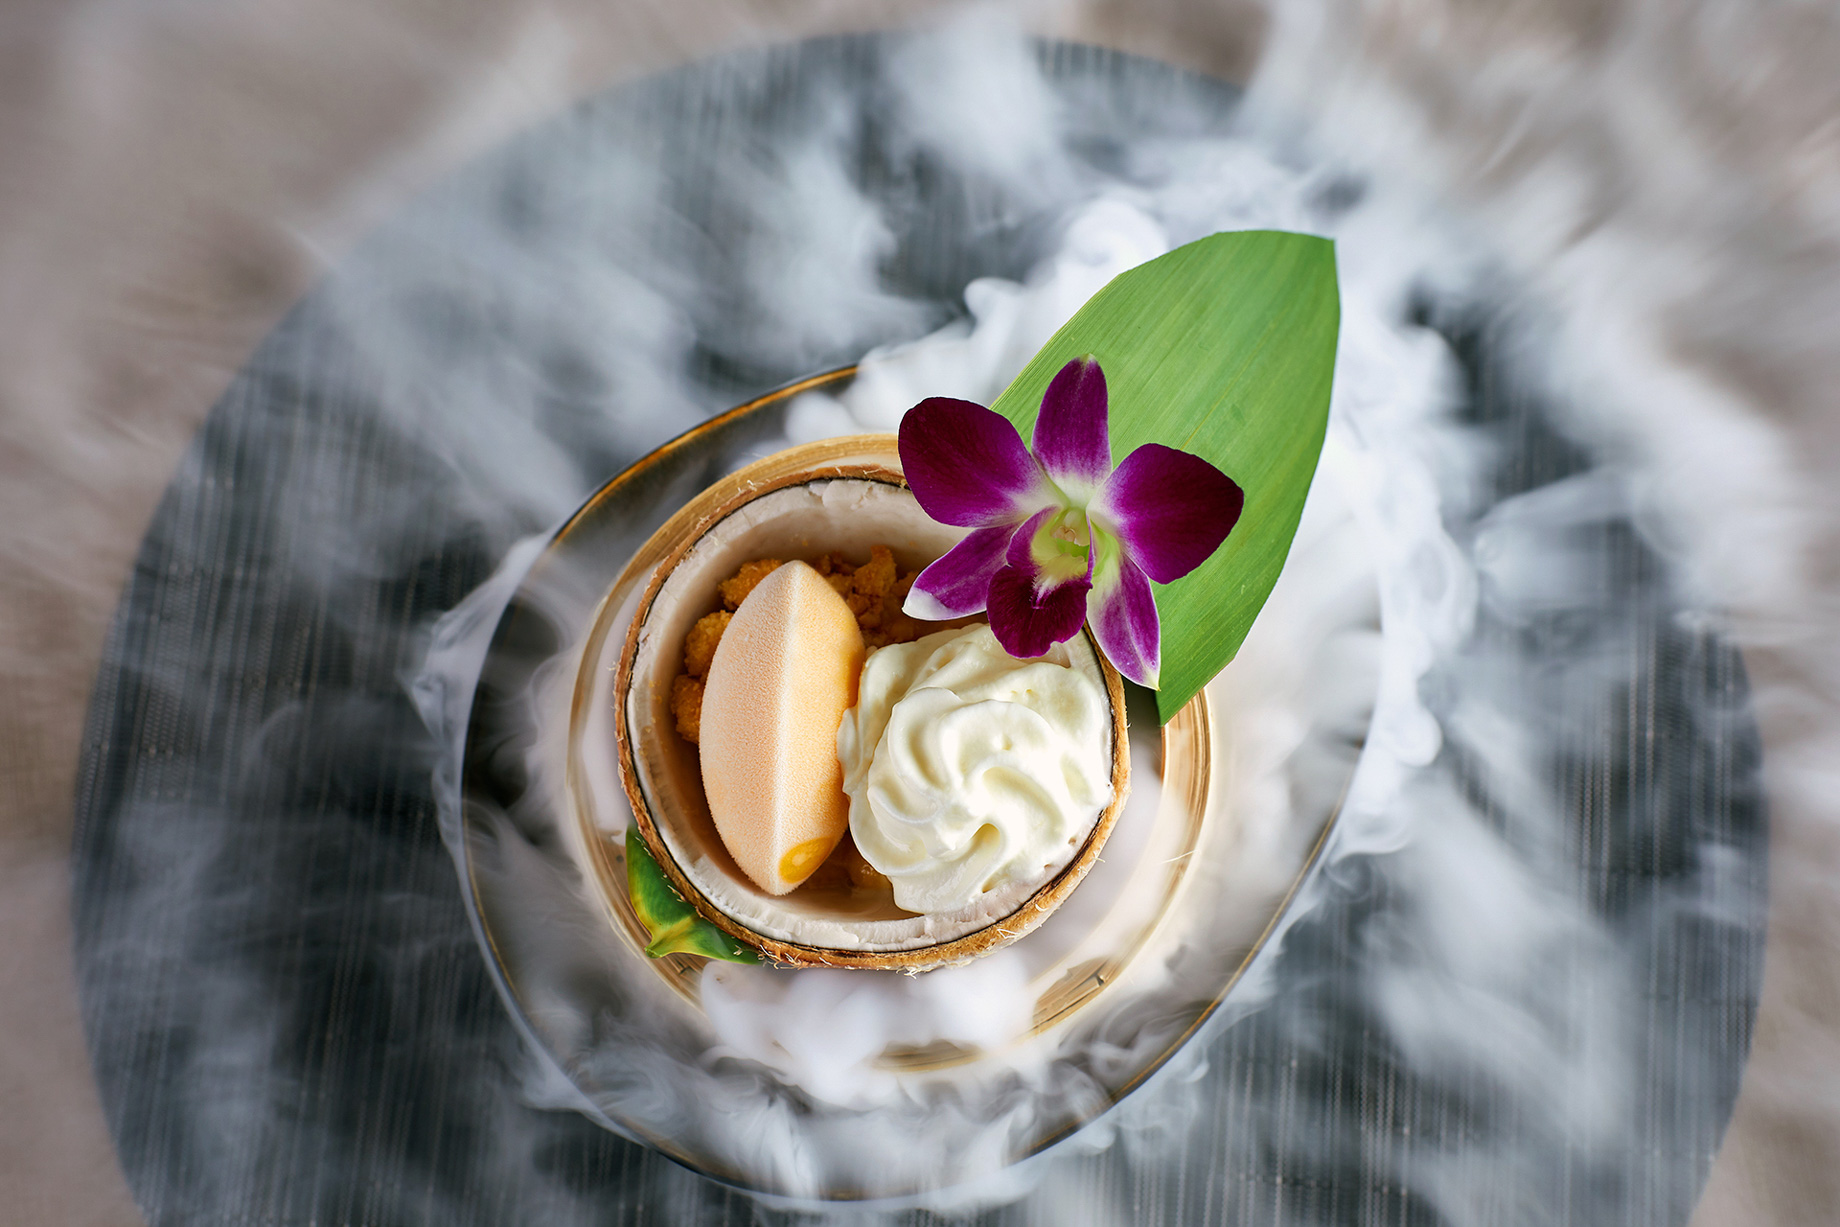 Burgenstock Hotel & Alpine Spa – Obburgen, Switzerland – Spices Kitchen & Terrace Restaurant Tropical Coconut Dessert